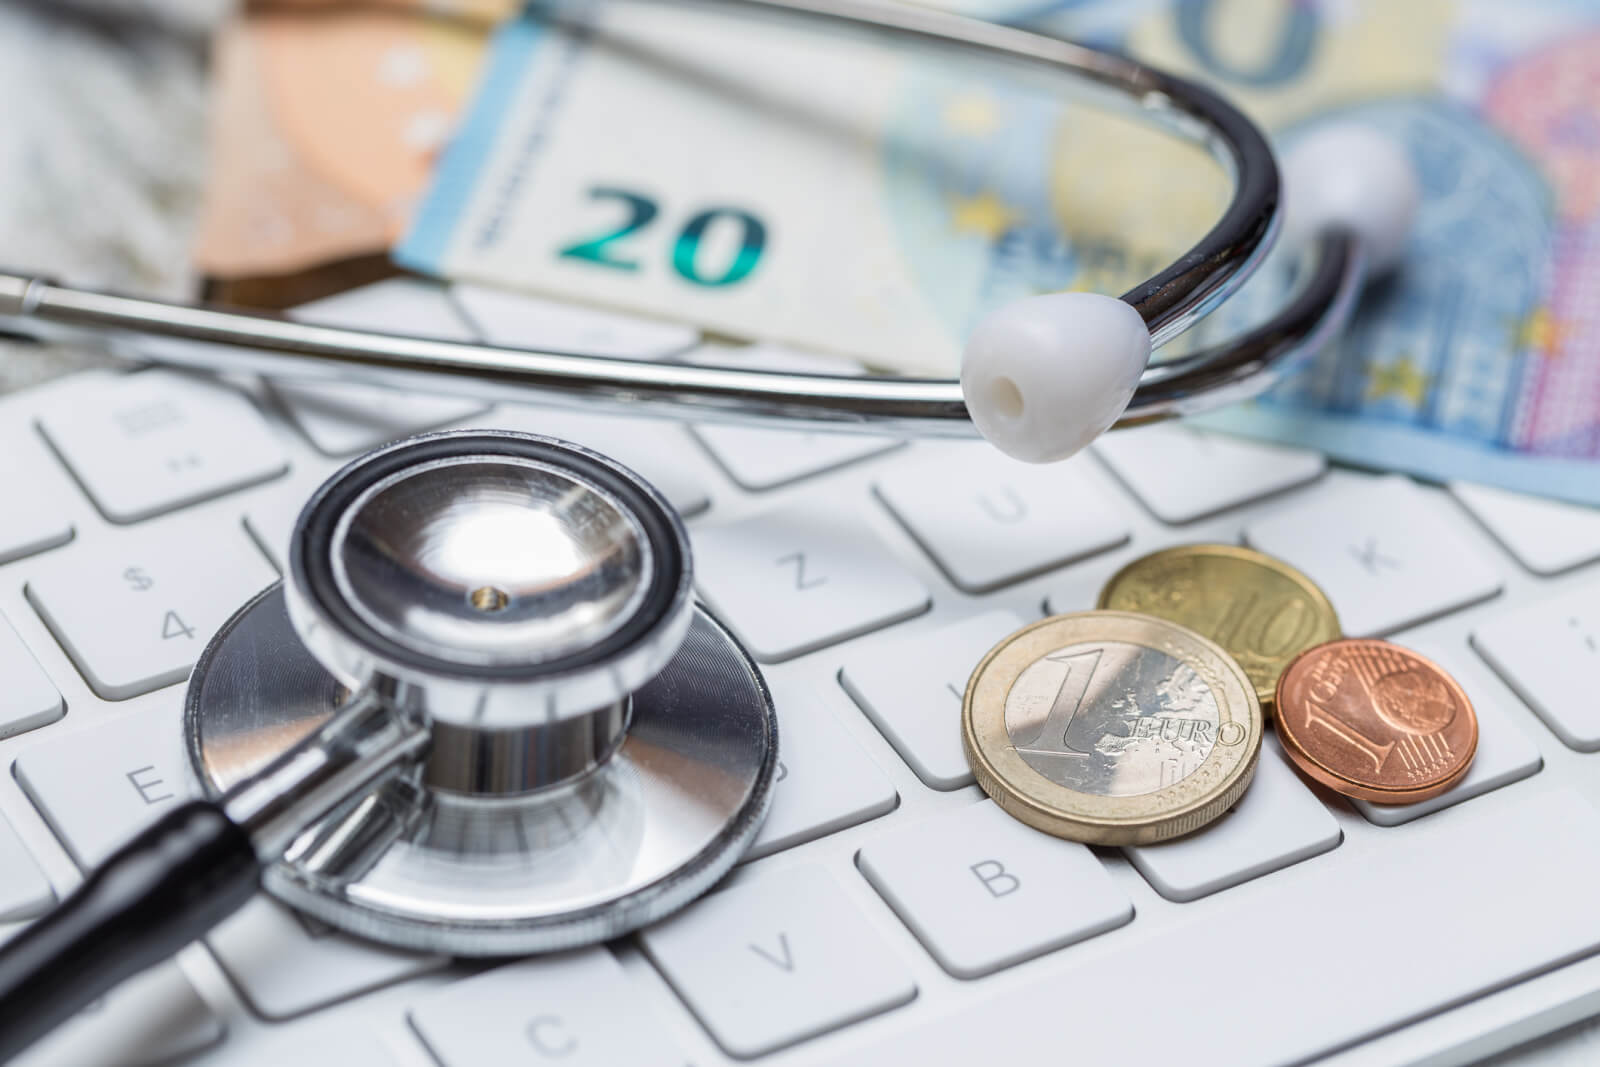 GKV-Finanzen: Heilmittelausgaben steigen 2020 um 2,3 Prozent